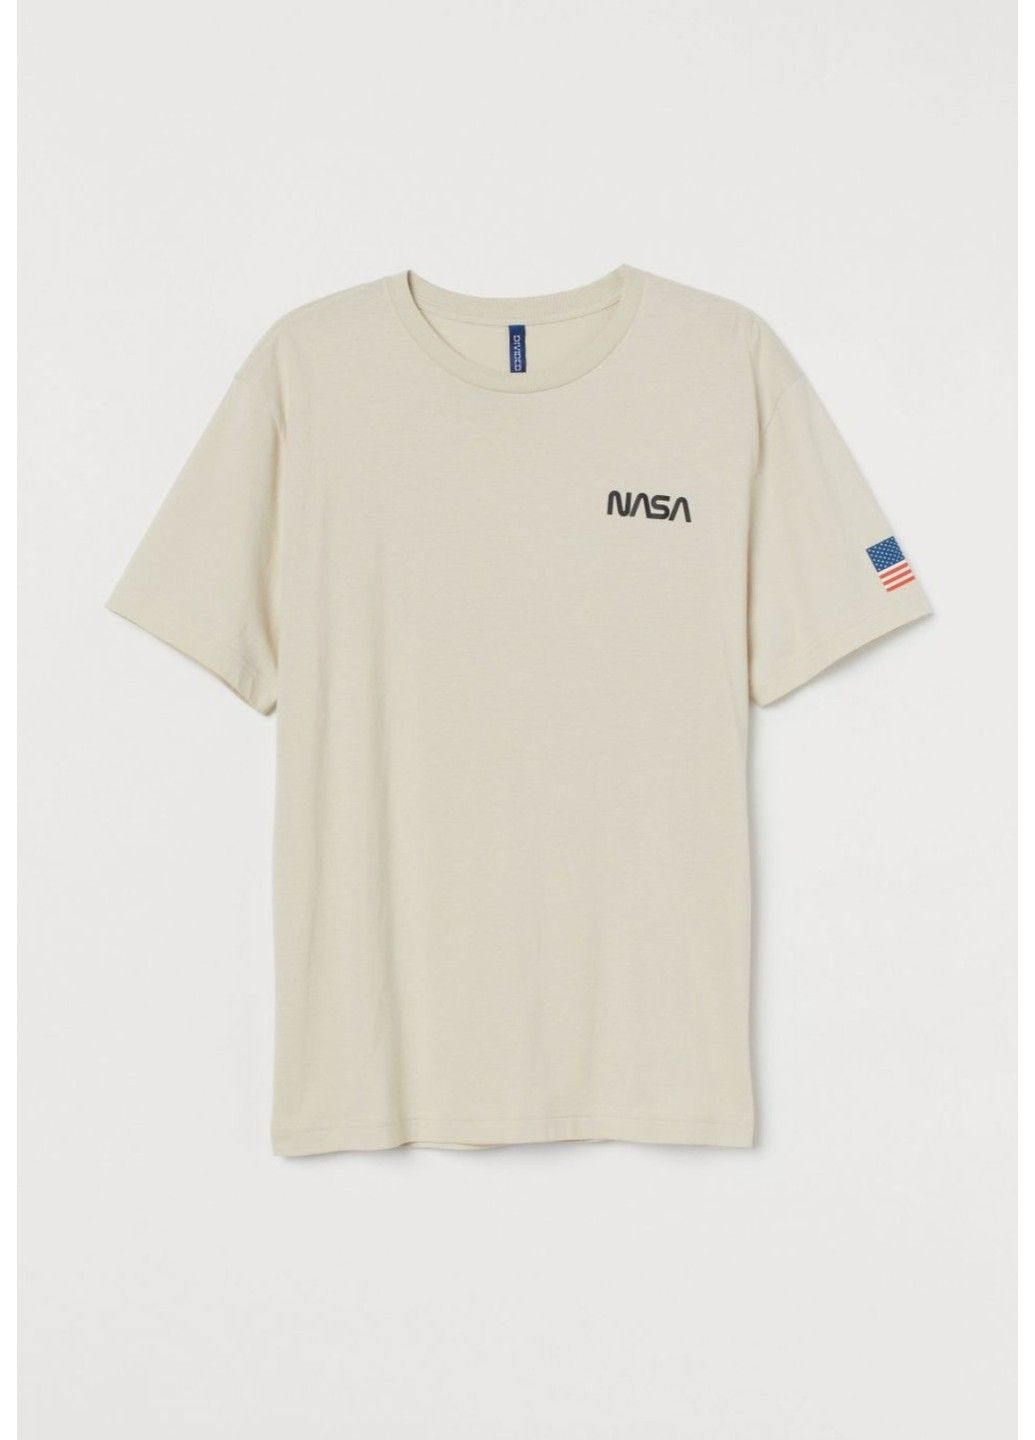 Светло-бежевая мужская трикотажная футболка н&м (56759) xl светло-бежевая H&M